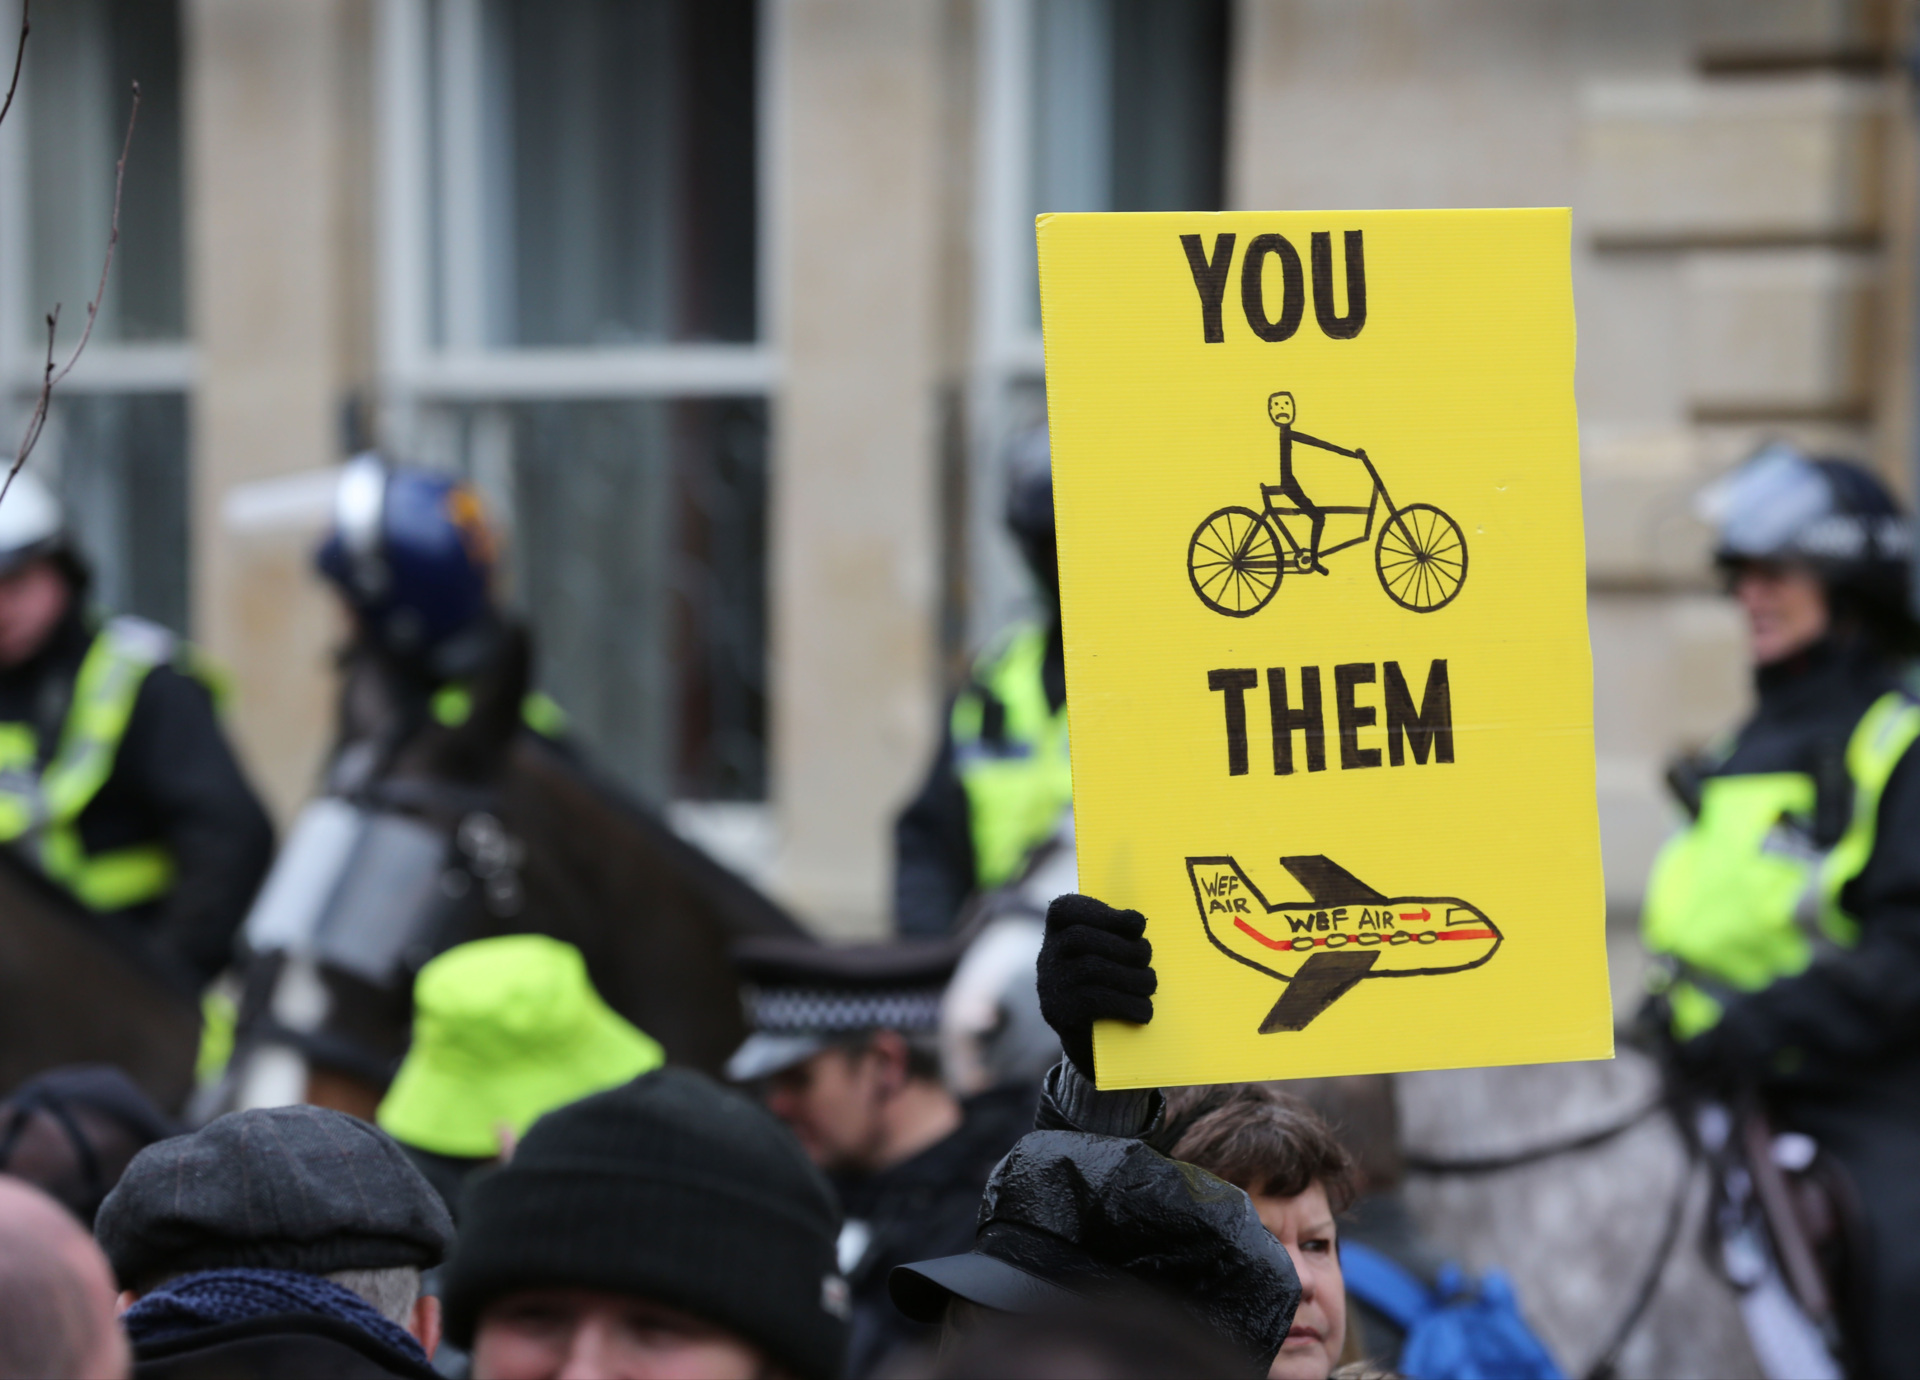 OXFORD, ANGLIE - 18. ÚNORA: Demonstrant drží ceduli kritizující nerovnost 15minutových měst, když se demonstranti shromažďují na Broad Street 18. února 2023 v Oxfordu v Anglii. Koncept 15minutových měst naznačuje, že všechny služby, vybavení, práce a volný čas jsou přístupné 15-20 minut chůze nebo na kole od předních dveří osoby. Protestující argumentují tím, že opatření vytvoří ghetta v oblastech a omezí jejich svobodu pohybu, jak chtějí. Jízdy autem budou omezeny v určitou denní dobu a budou kontrolovány kamerami pro rozpoznávání poznávacích značek (ANPR) a pokutami. (Foto: Martin Pope / Getty Images)